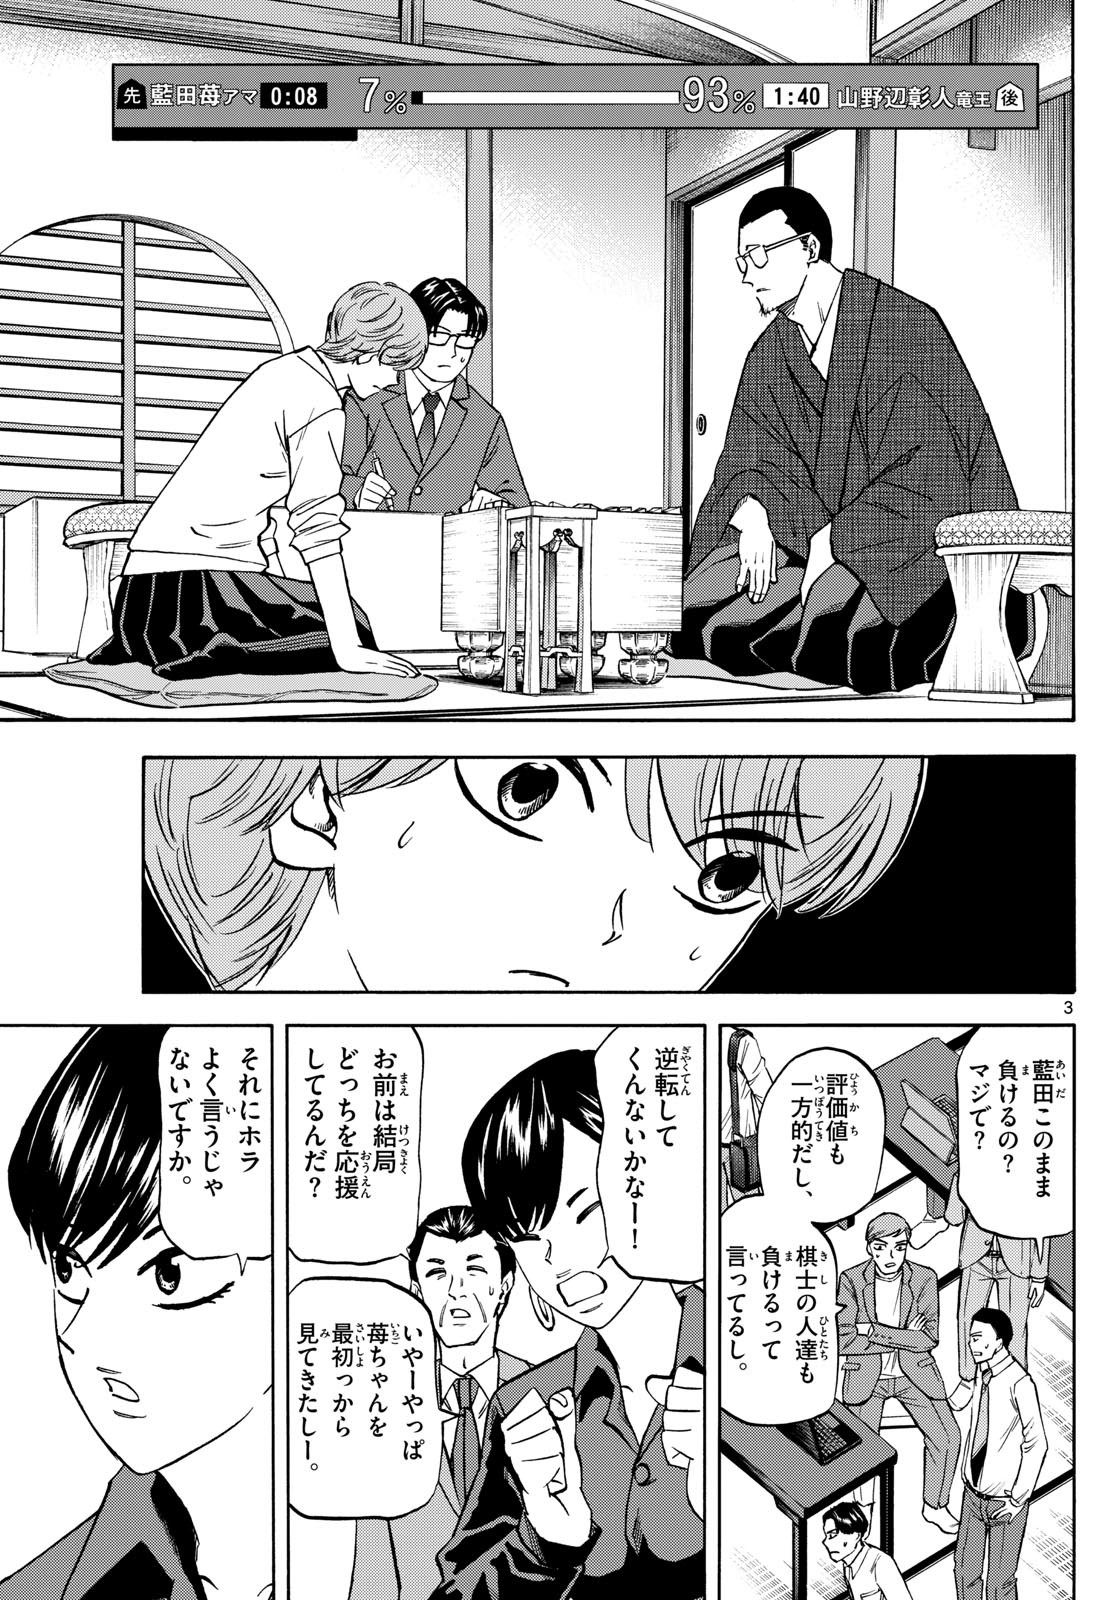 Ryu-to-Ichigo - Chapter 178 - Page 3